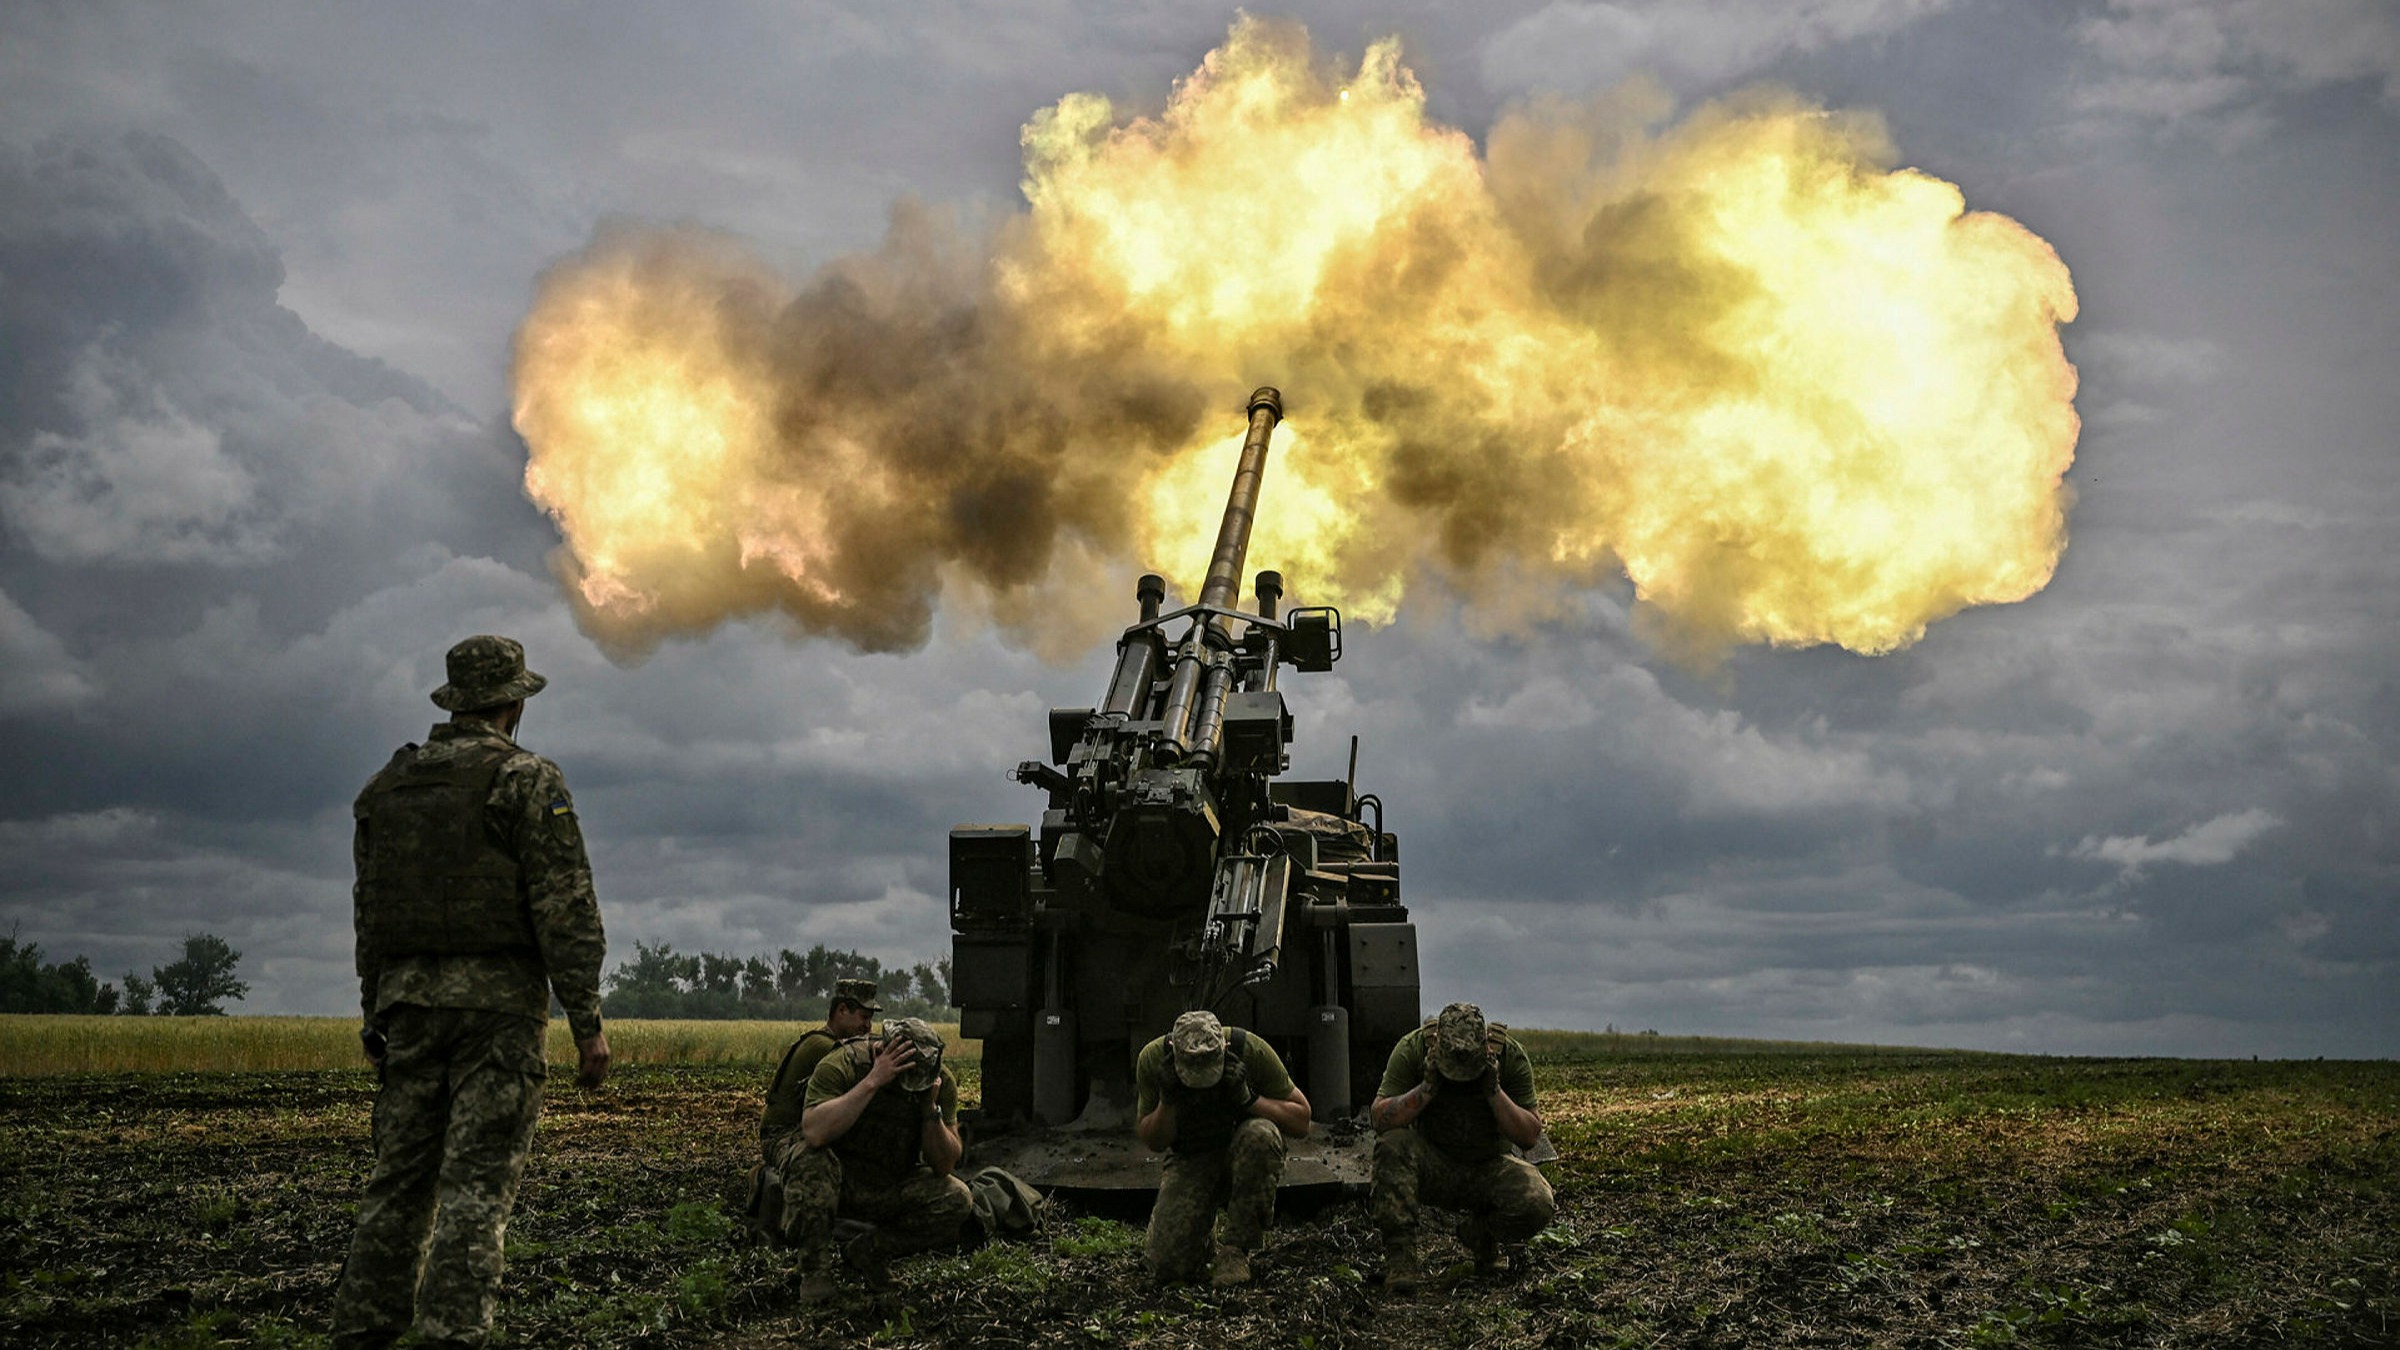 Υπάρχει πρόβλημα με τα πυρομαχικά της Ουκρανίας; – Η Δύση χρησιμοποίησε τα περισσότερα αποθέματά της